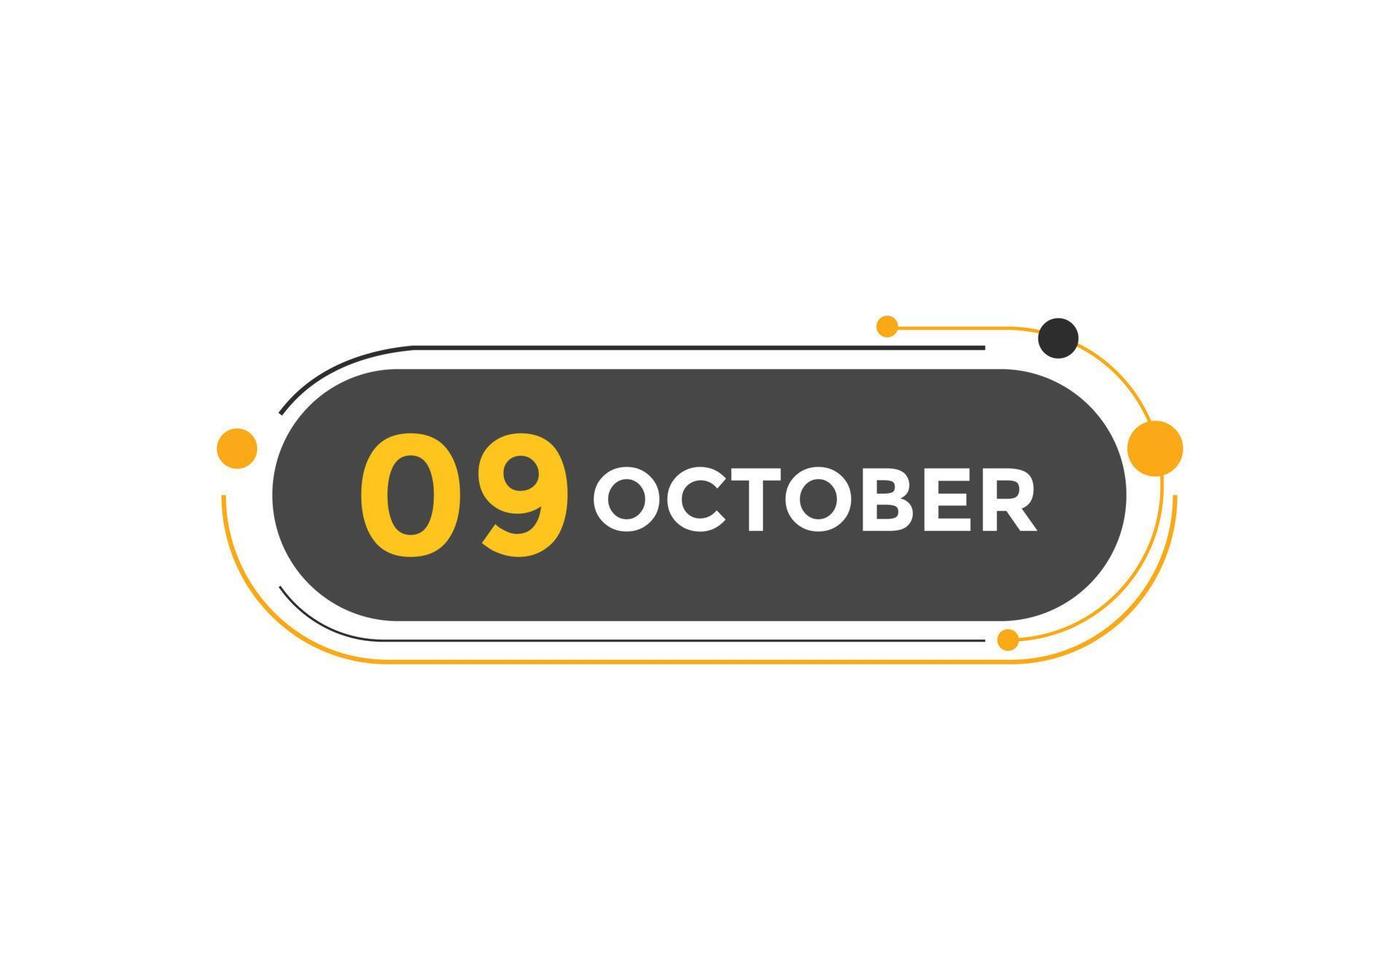 lembrete de calendário de 9 de outubro. 9 de outubro modelo de ícone de calendário diário. modelo de design de ícone de calendário 9 de outubro. ilustração vetorial vetor